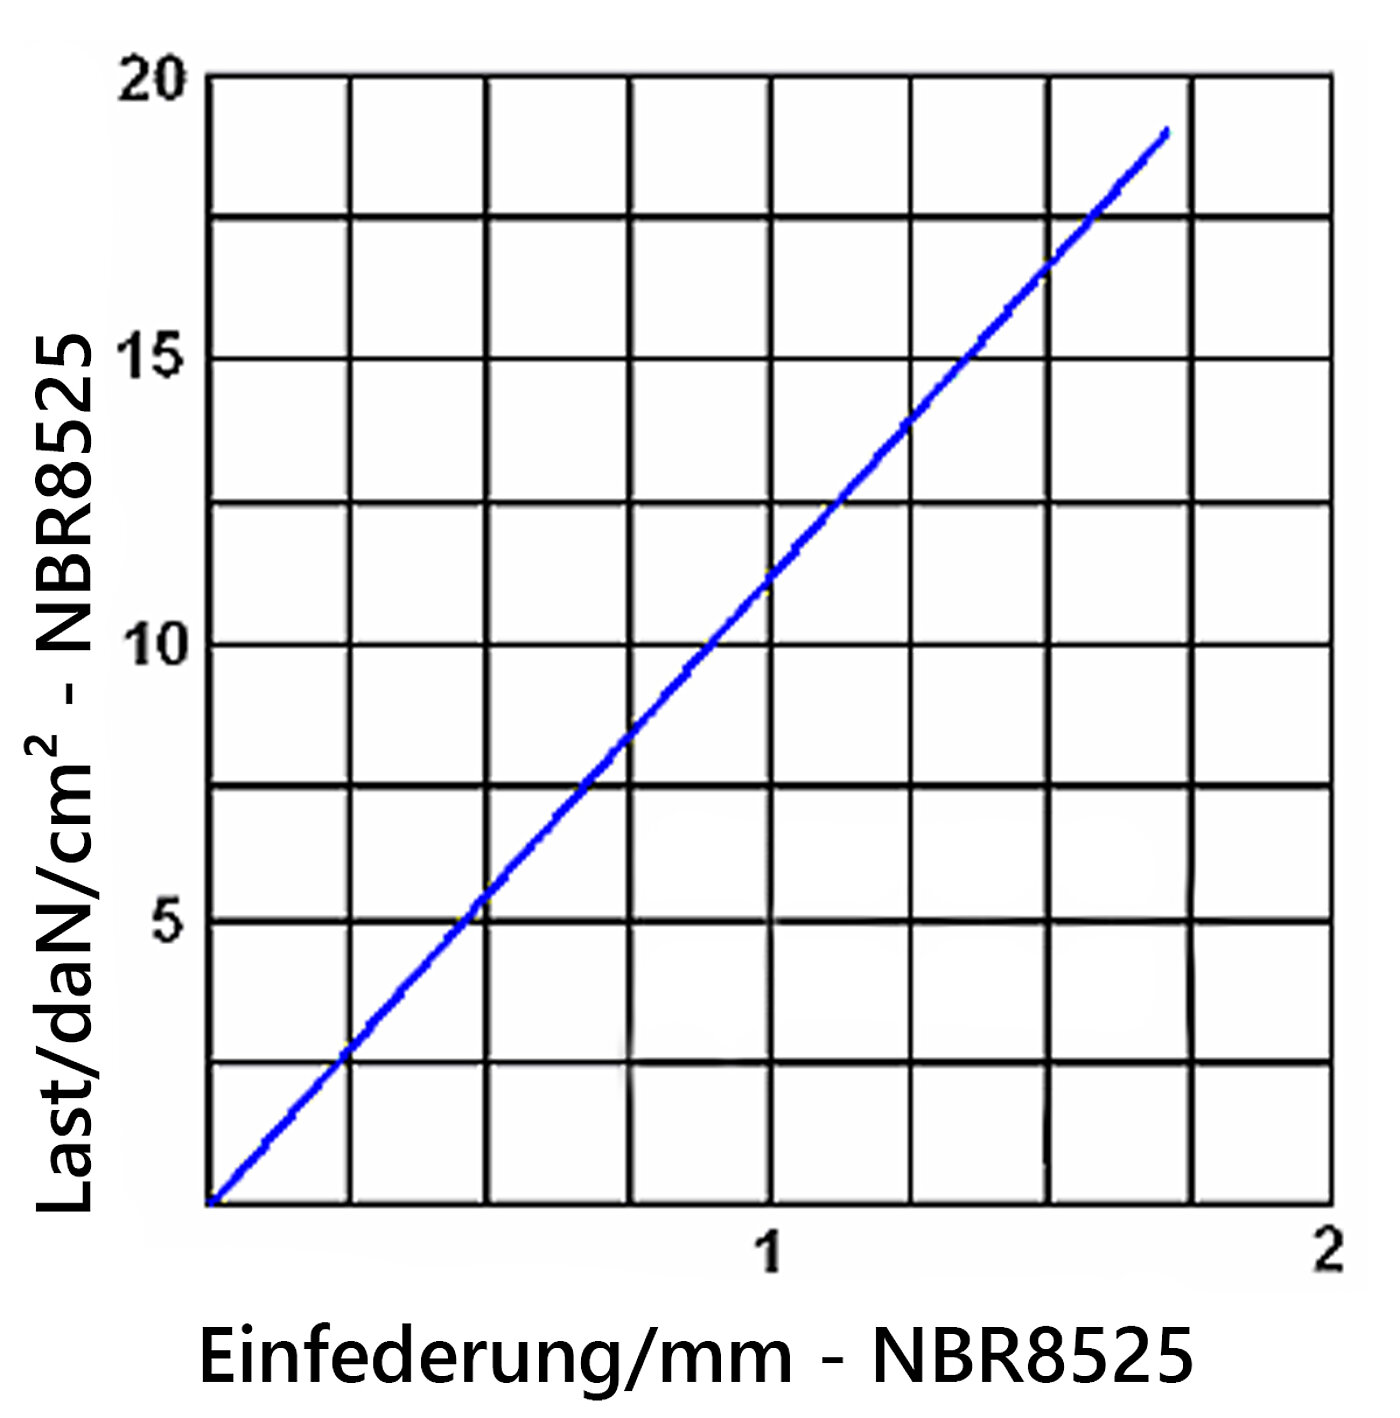 Diagramm der Einfederung der Elastomerplatte NBR8525 unter Last